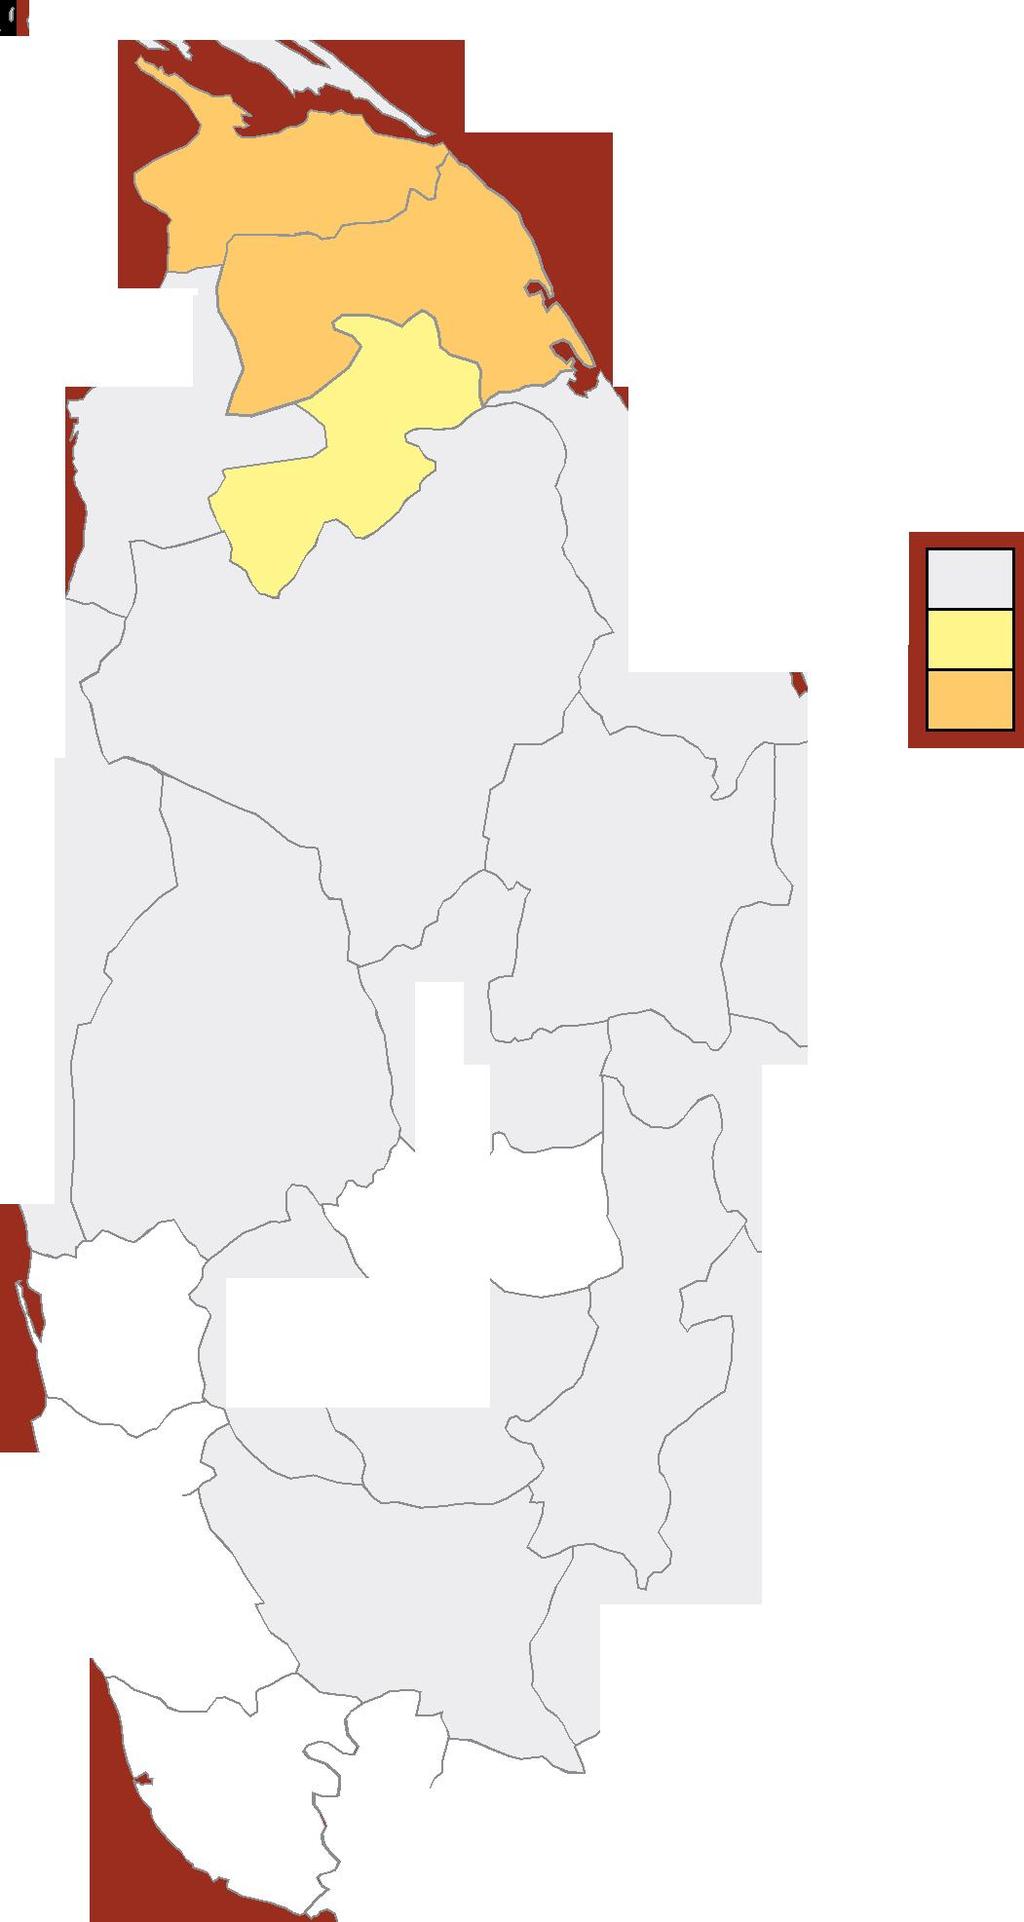 Nuwaraeliya 93% Ratnapura 89% Badulla